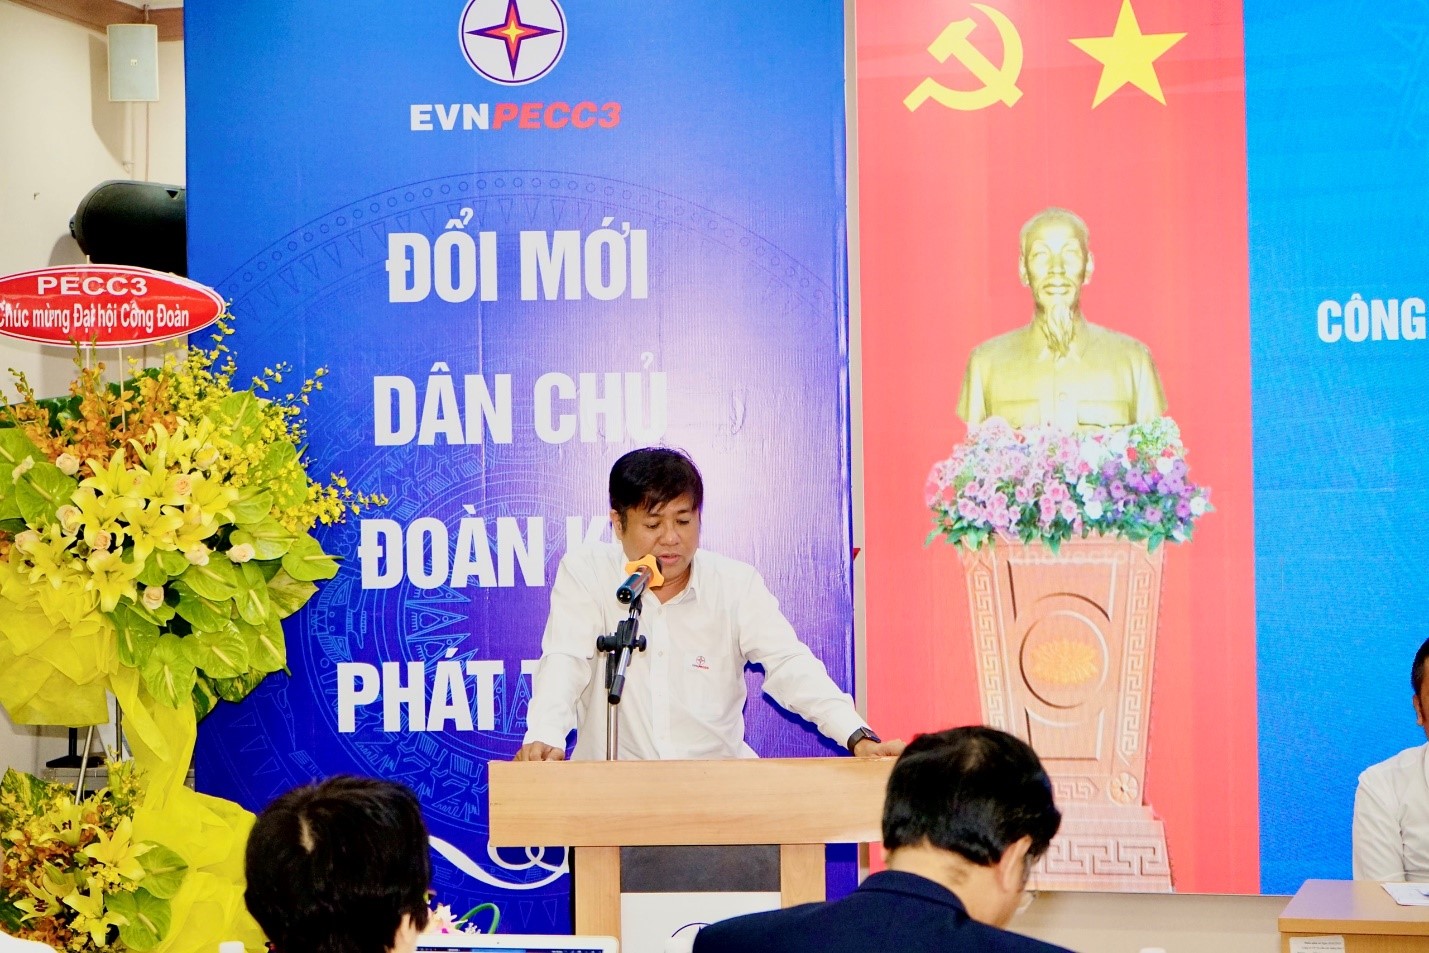 Đ/c Nguyễn Như Hoàng Tuấn – Bí thư ĐU, Chủ tịch HĐQT Công ty phát biểu chỉ đạo Đại hội